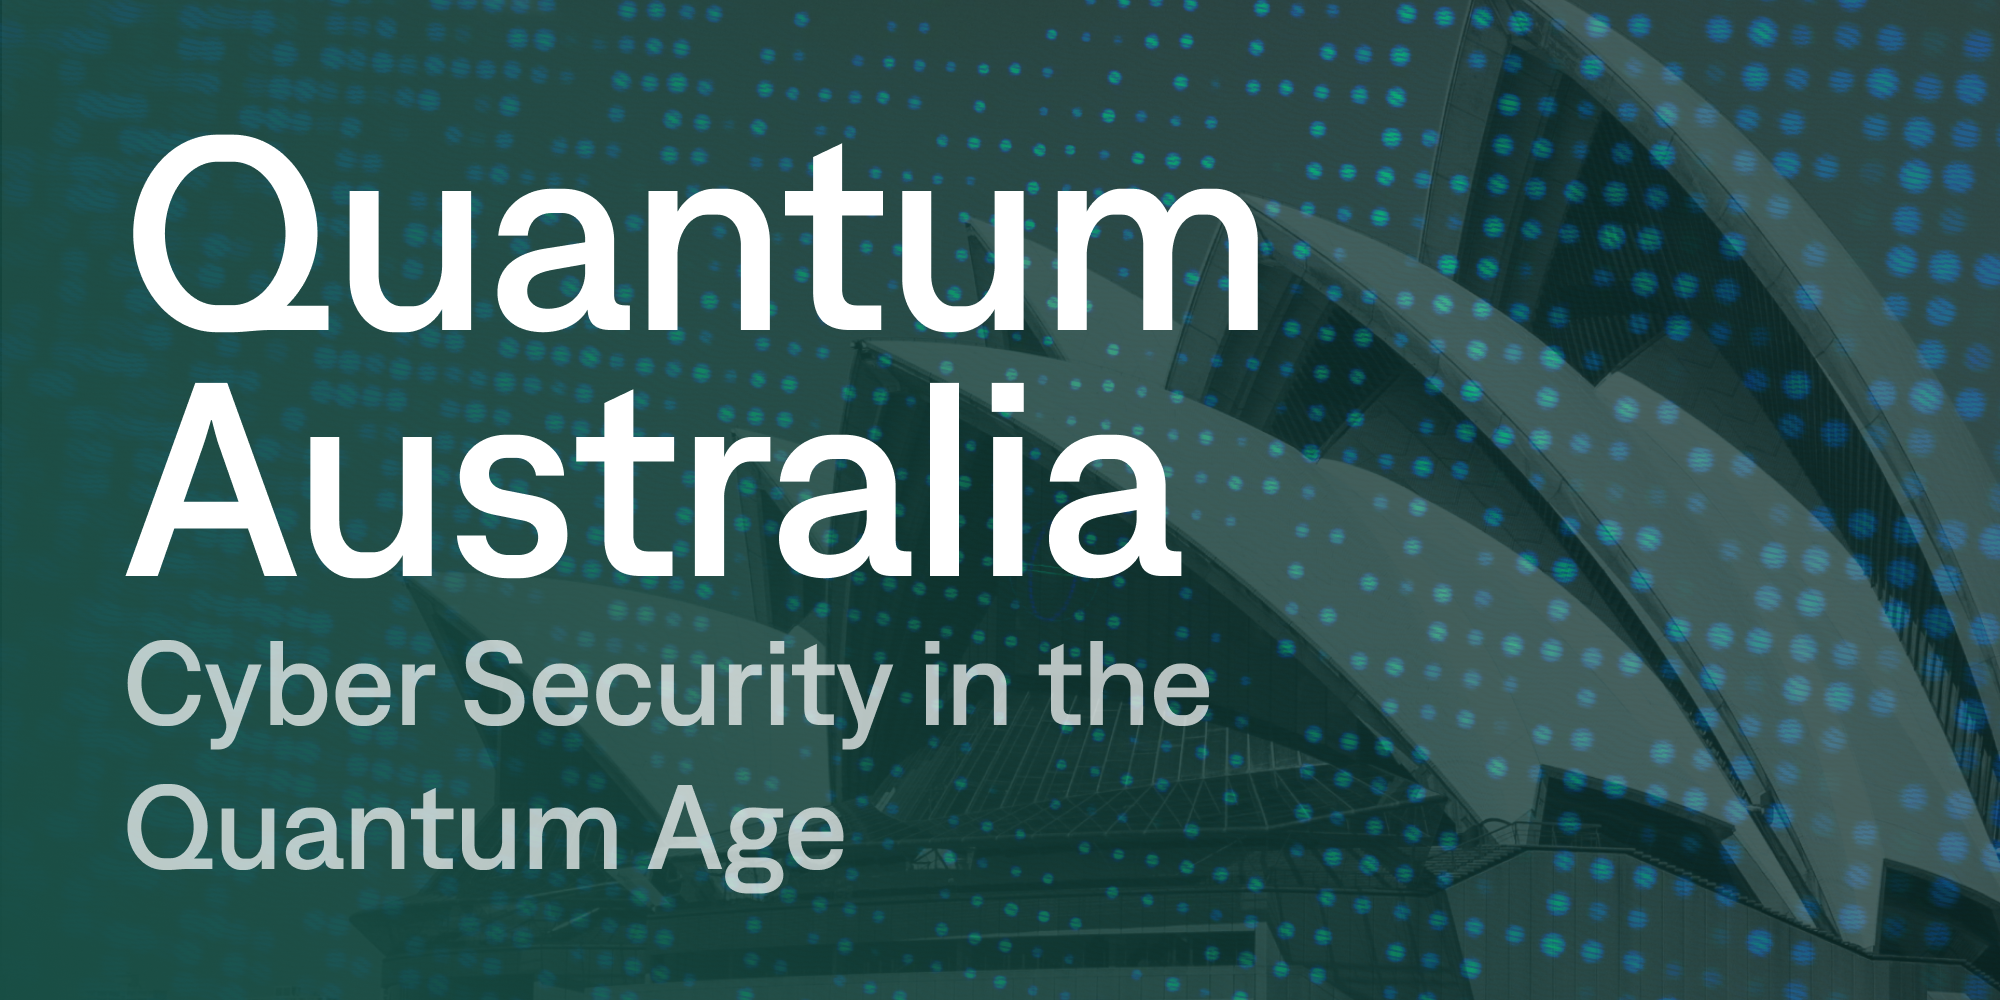 Quantum Australia: Cyber Security in the Quantum Age cover